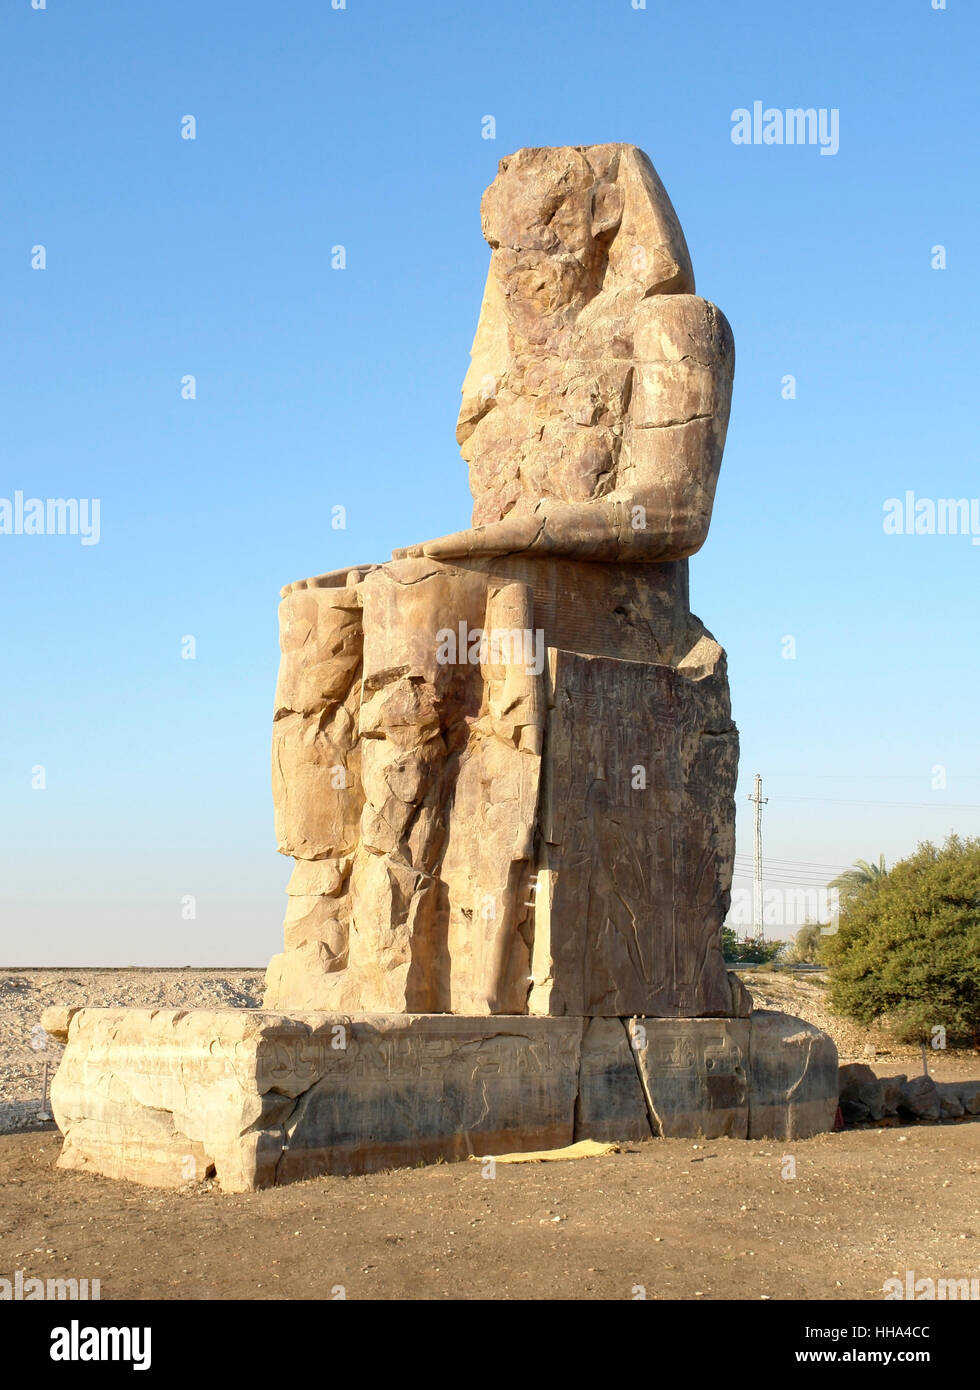 Sud della statua di i Colossi di Memnon, due enormi statue antiche nei pressi di Luxor in Egitto (Africa) al tempo di sera Foto Stock